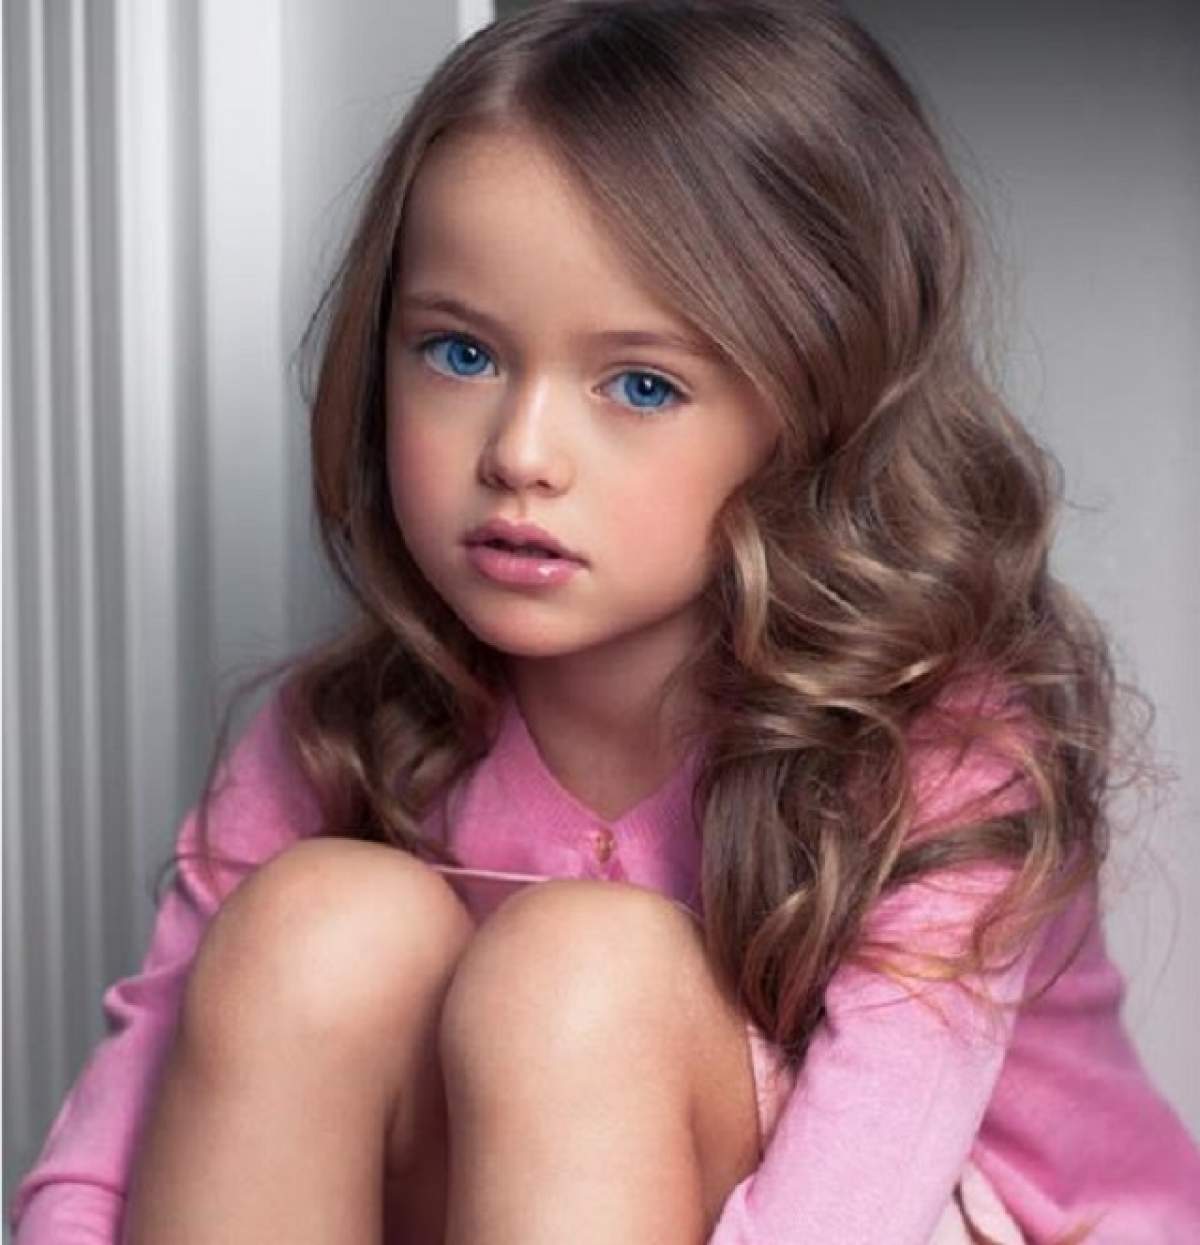 Îți amintești de "cea mai frumoasă fetiță din lume"? Kristina Pimenova arată total diferit acum